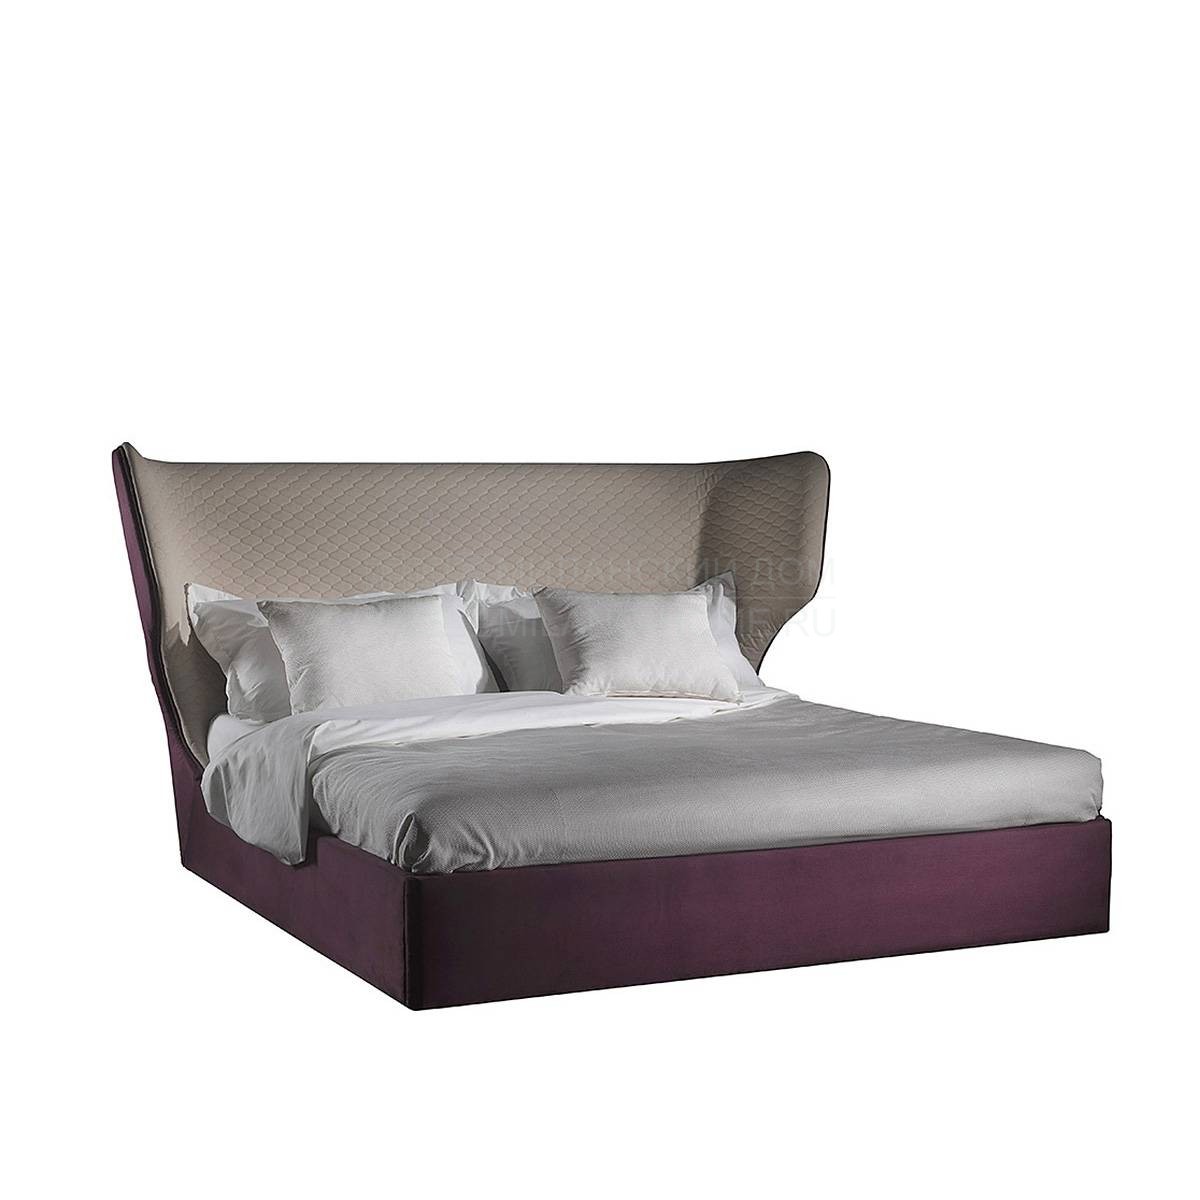 Двуспальная кровать Rebecca bed из Испании фабрики COLECCION ALEXANDRA